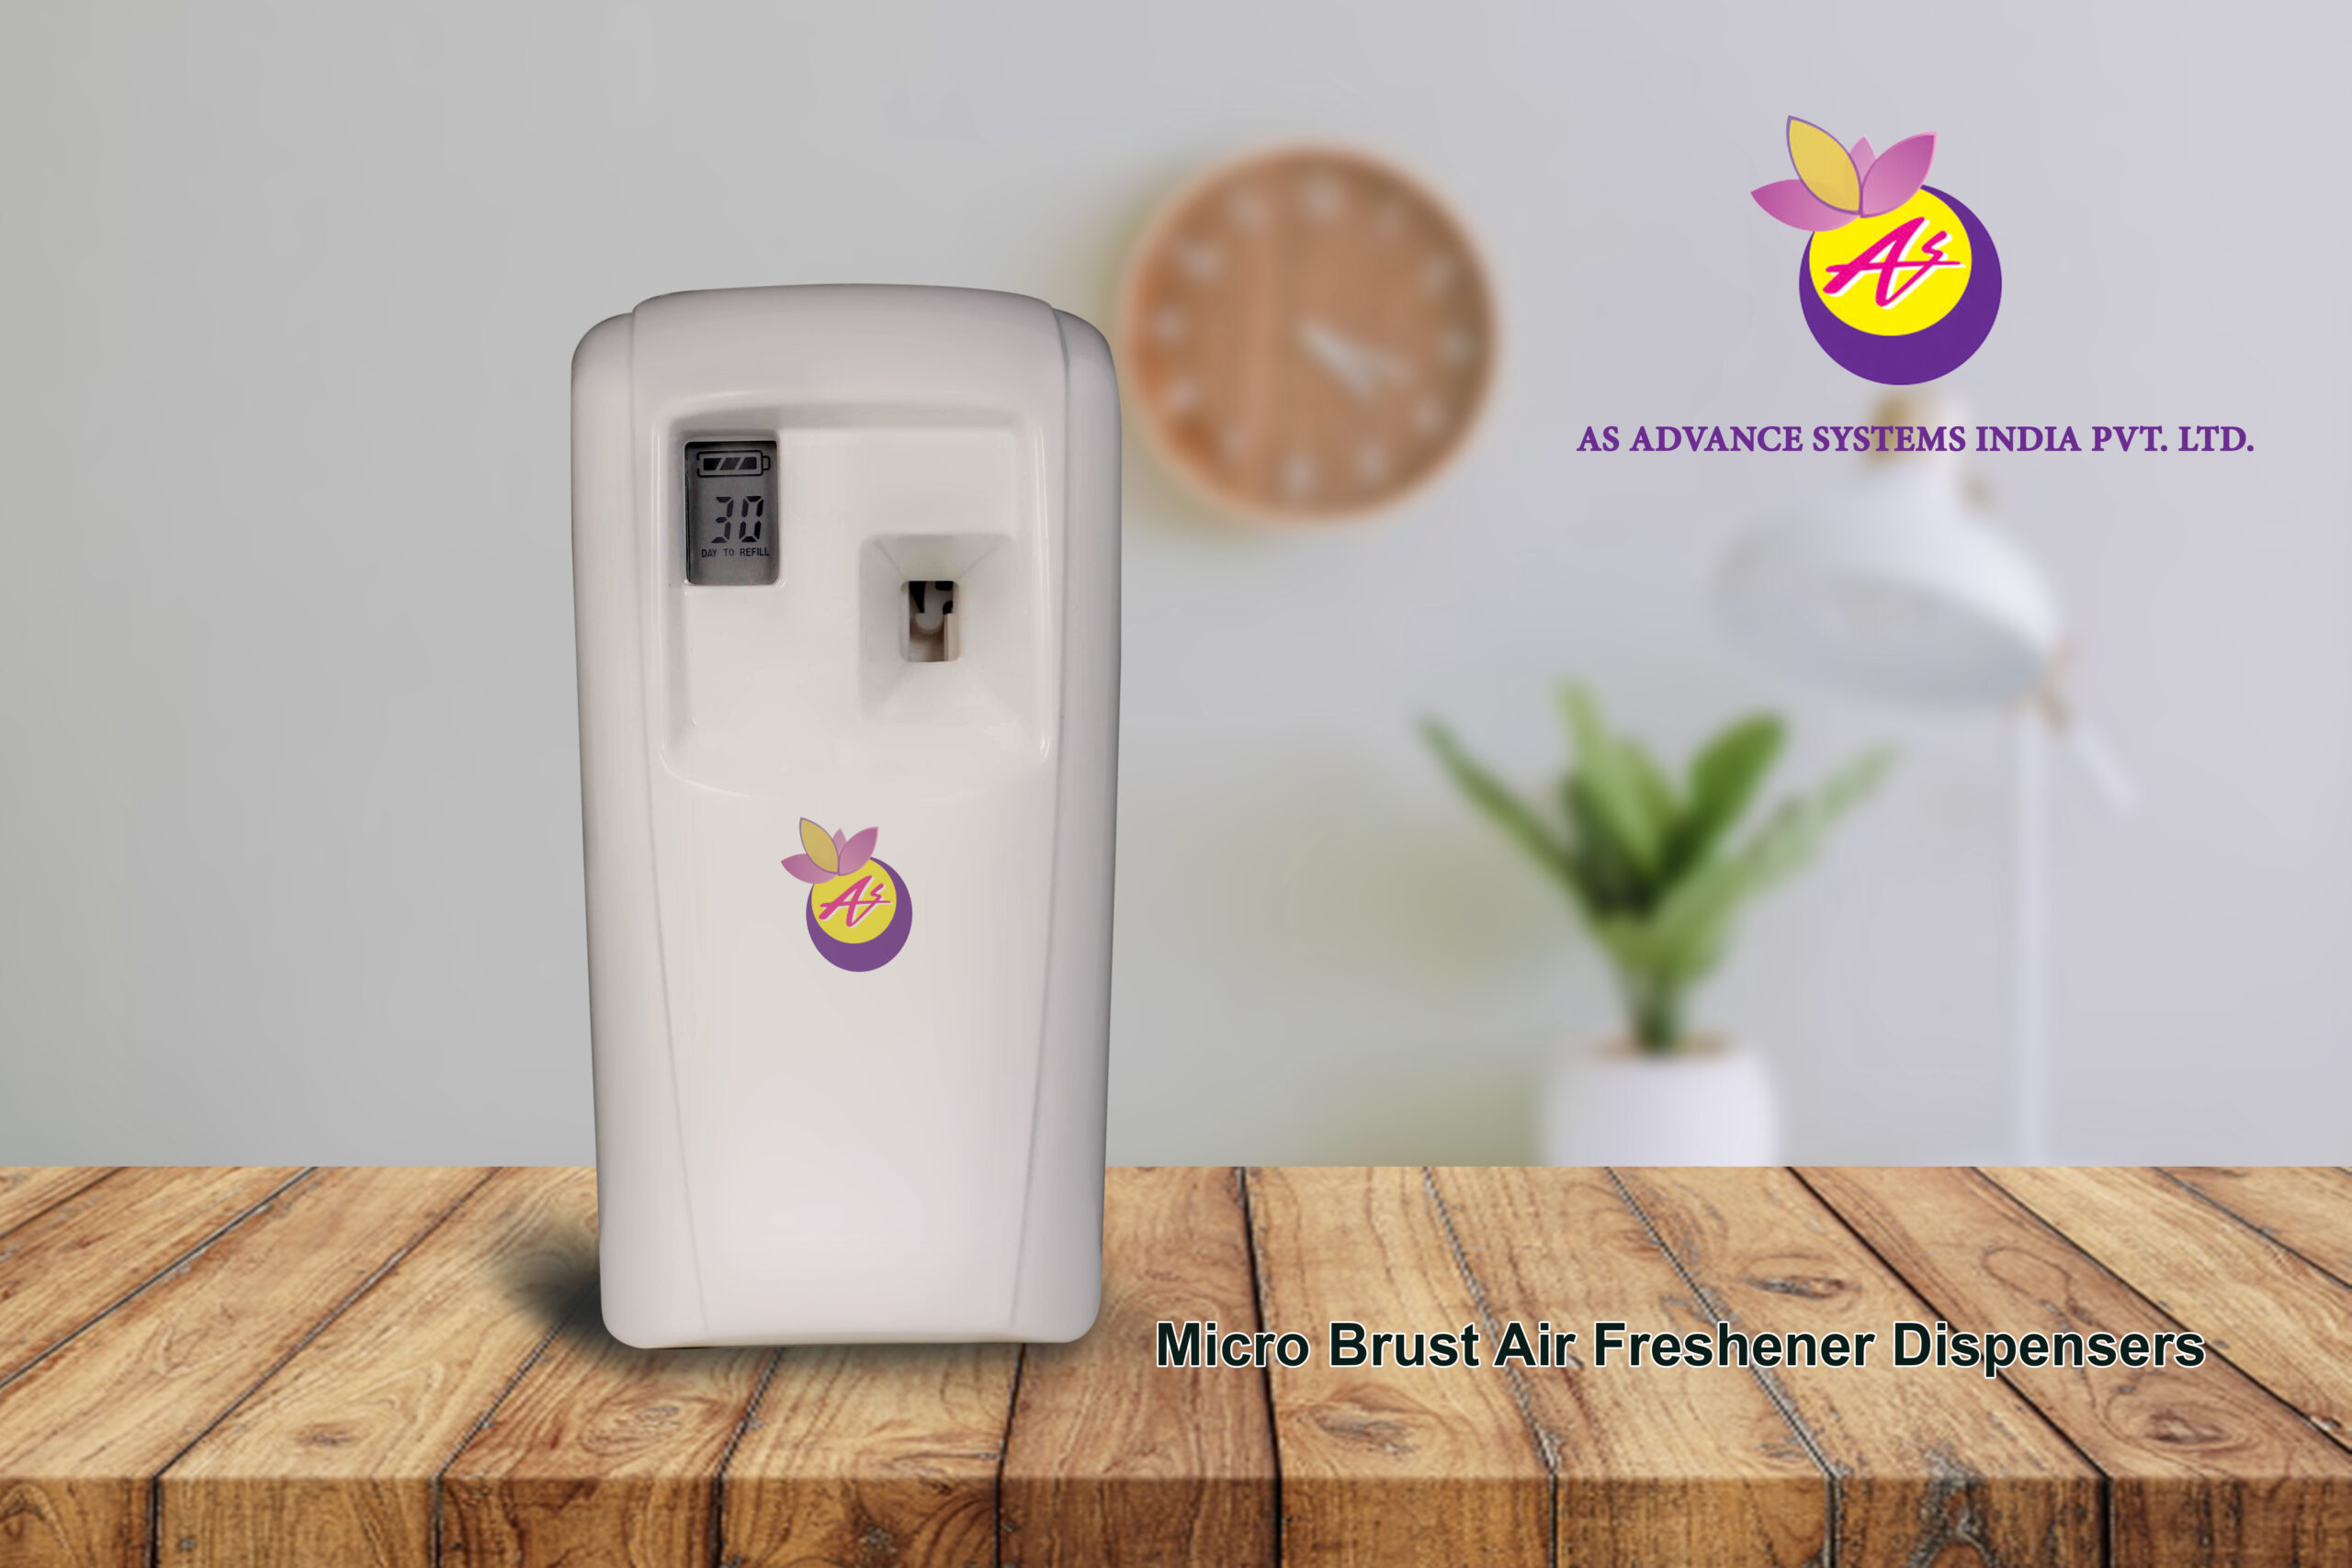 Micro Brust Air Freshener Dispenser